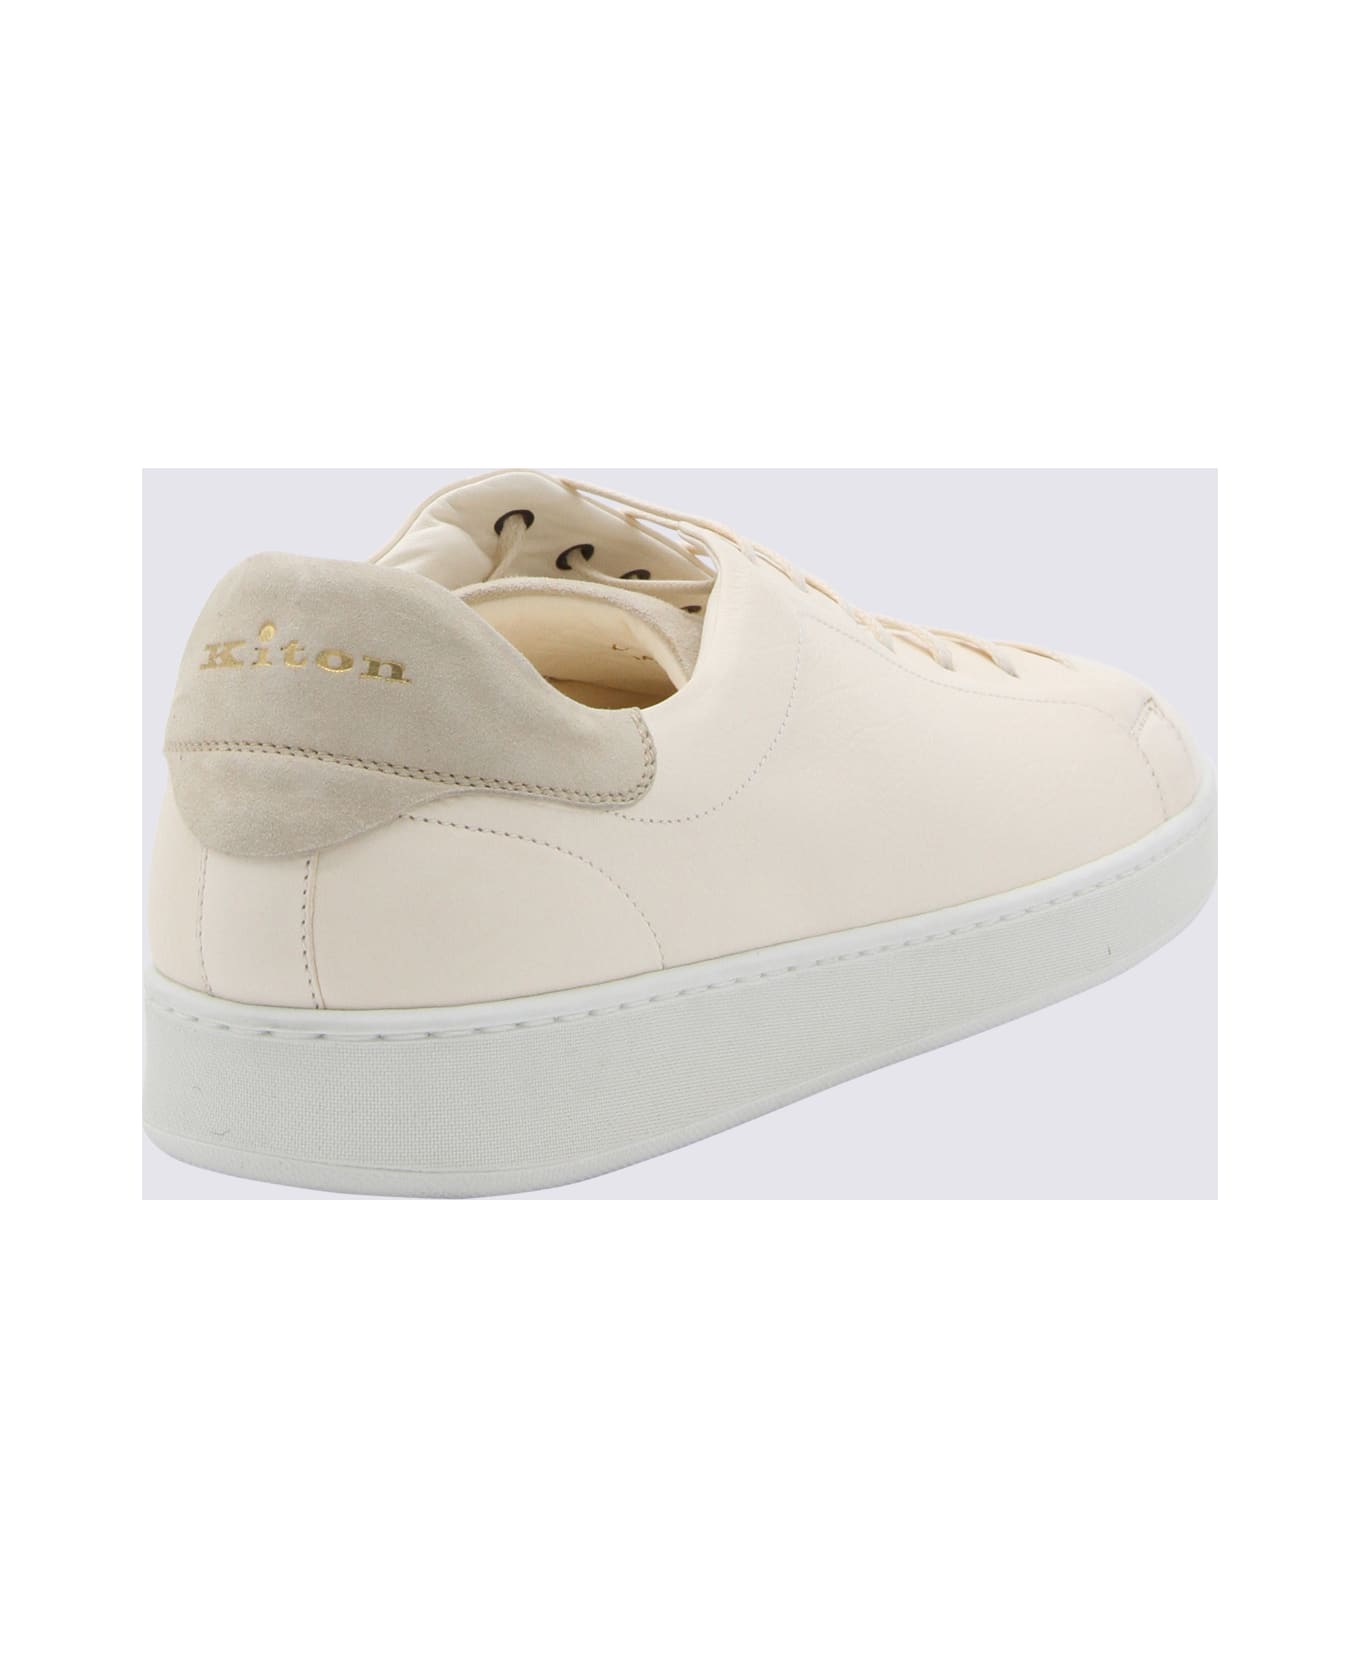 Kiton White Leather Sneakers - White スニーカー